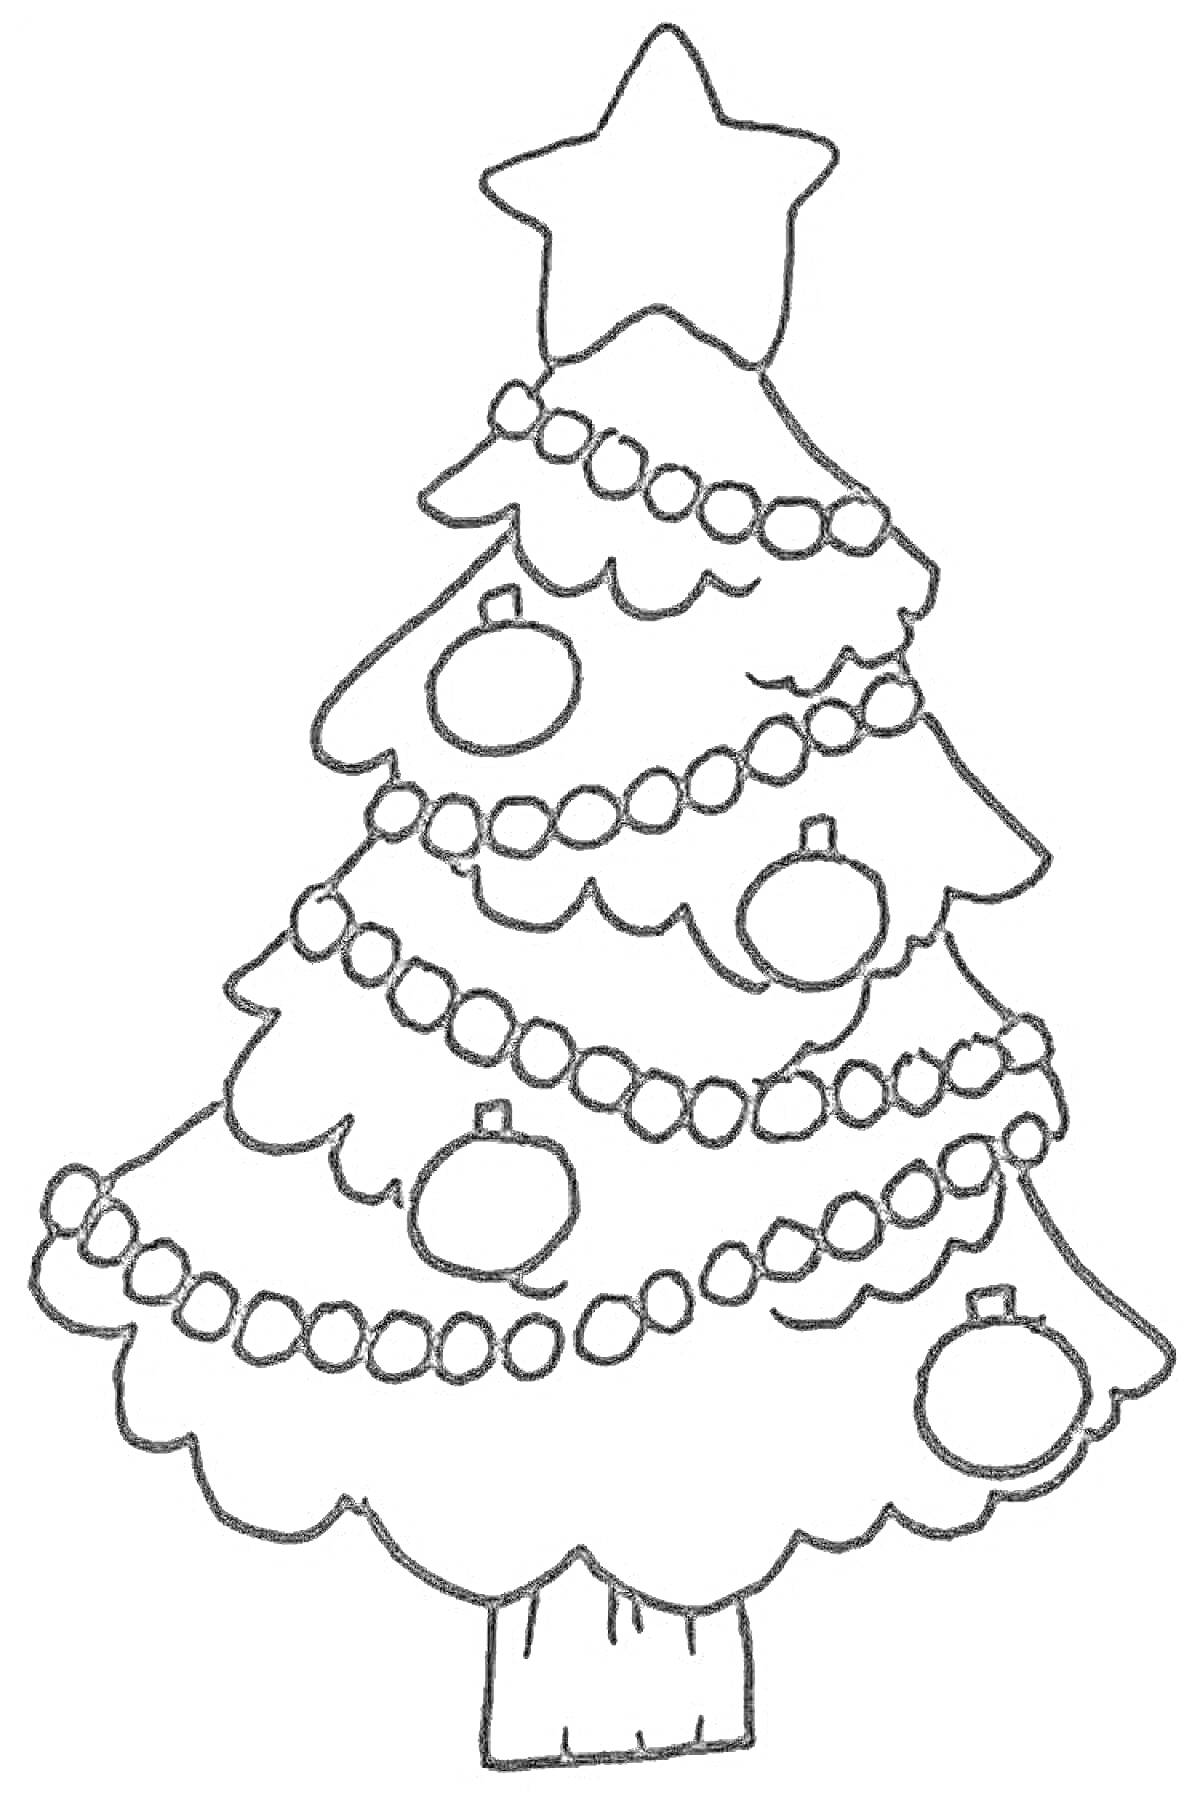 Раскраска Раскраска нарядной елки с украшениями: звезда, шары, гирлянды